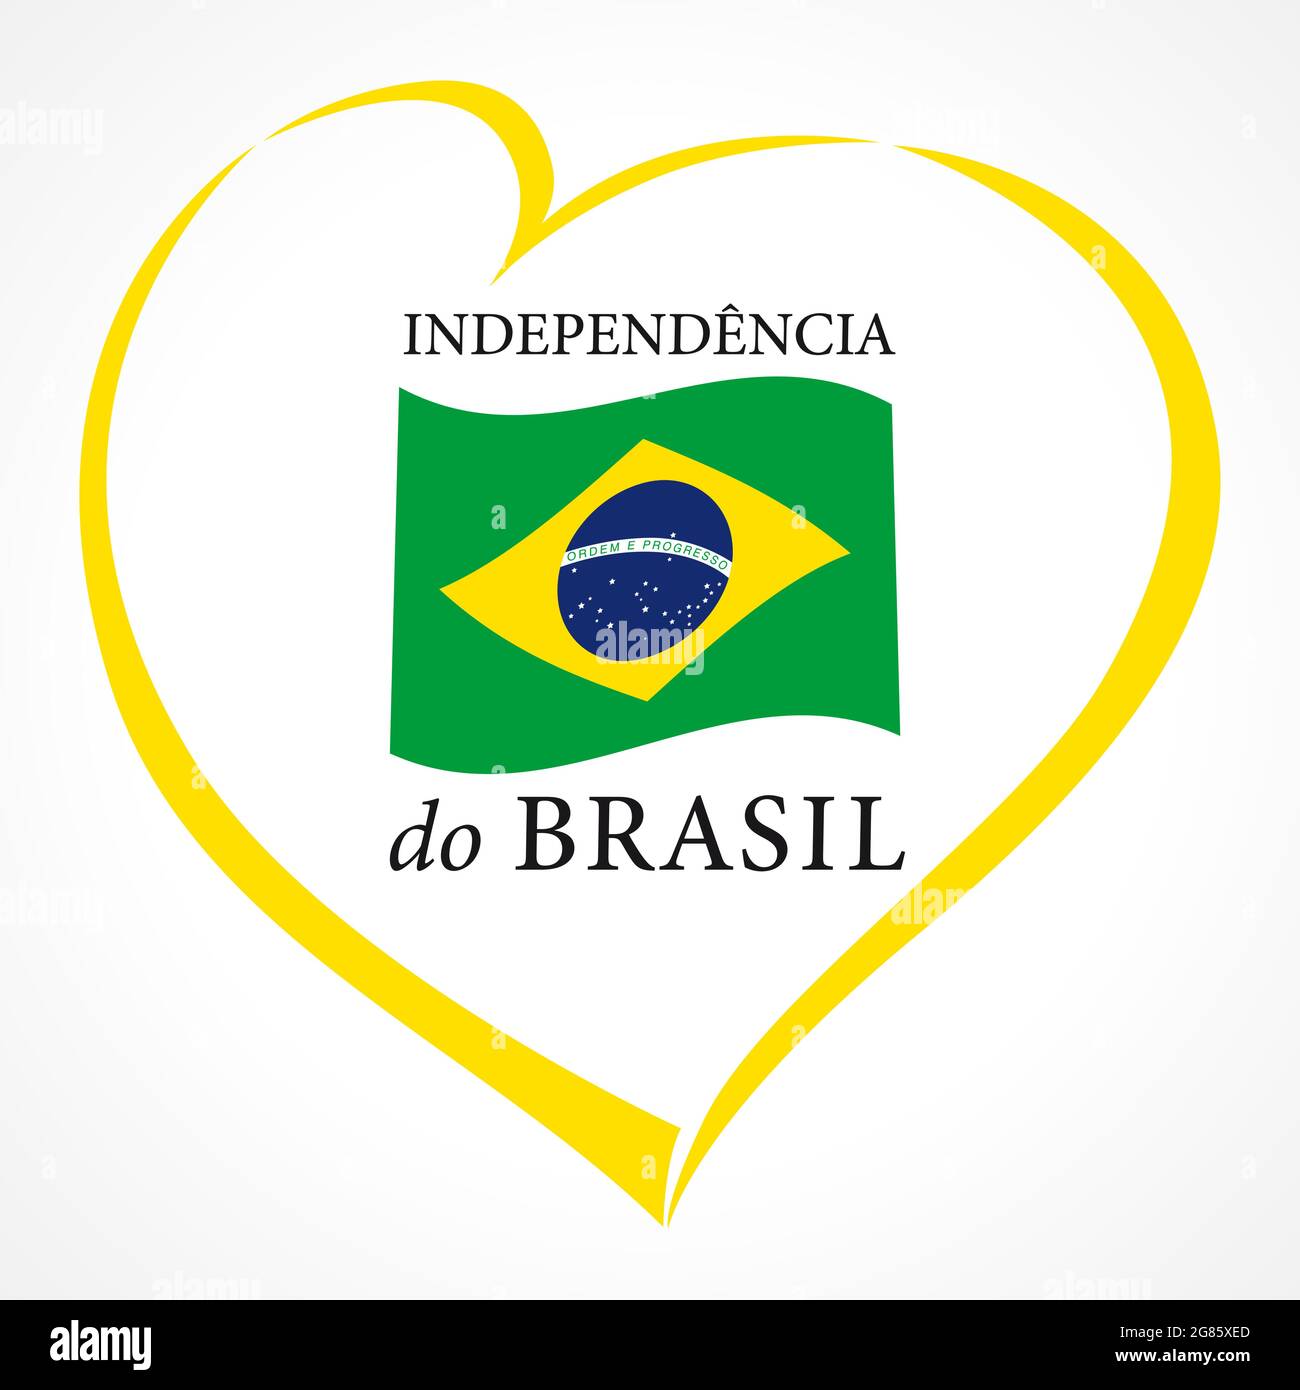 Le jour de l'indépendance du Brésil évoque l'idée. Éléments de drapeau brésilien avec carte de style trait de pinceau. Concept d'icône créative des fêtes nationales. Abstrait isolé Illustration de Vecteur